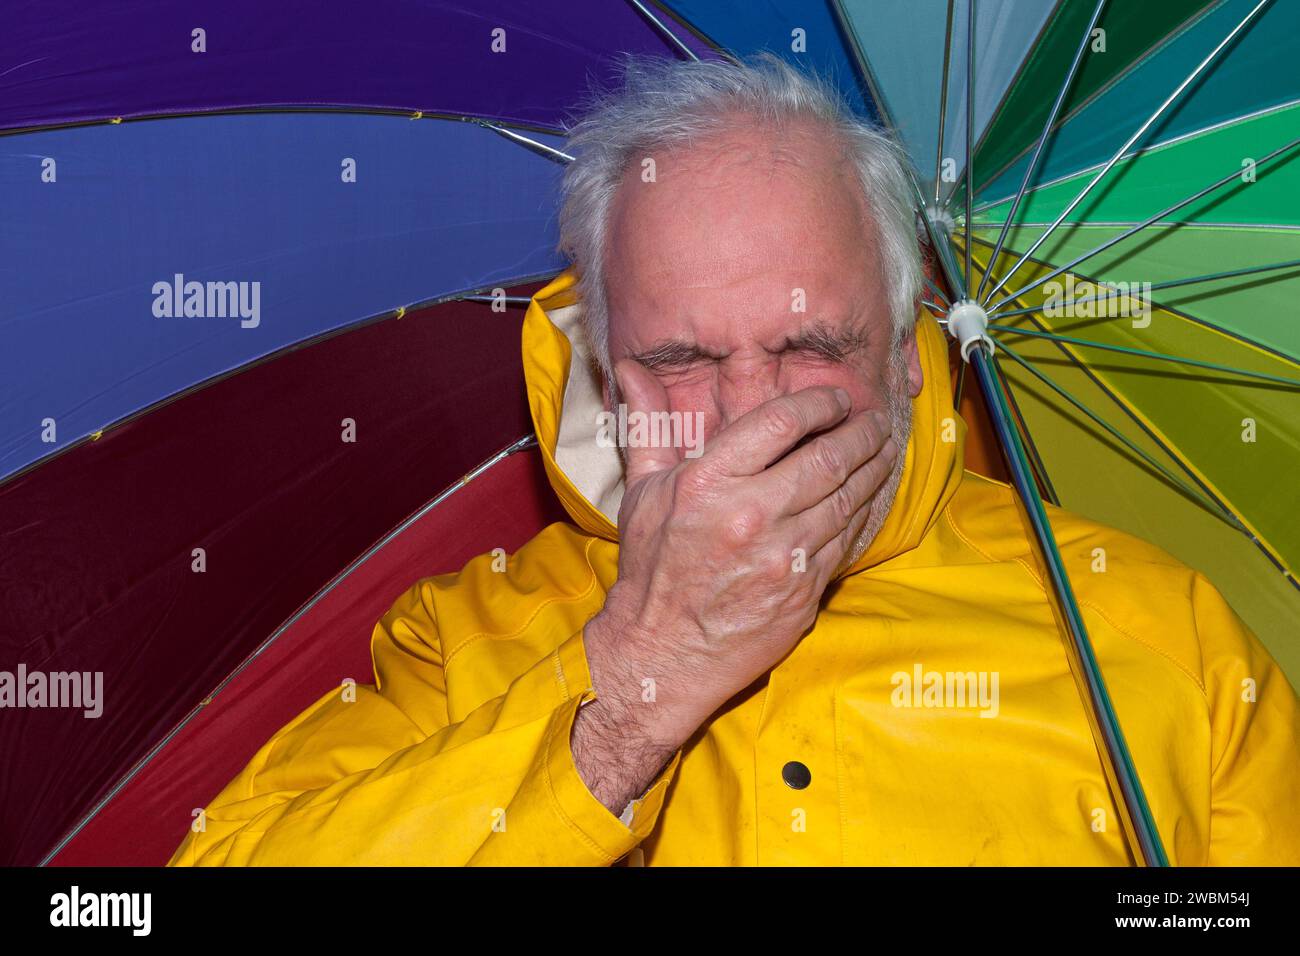 Homme en veste de pluie jaune et parapluie éternuant par temps pluvieux, montrant des symptômes de froid. Représentation réaliste des jours de pluie et de la santé. Banque D'Images